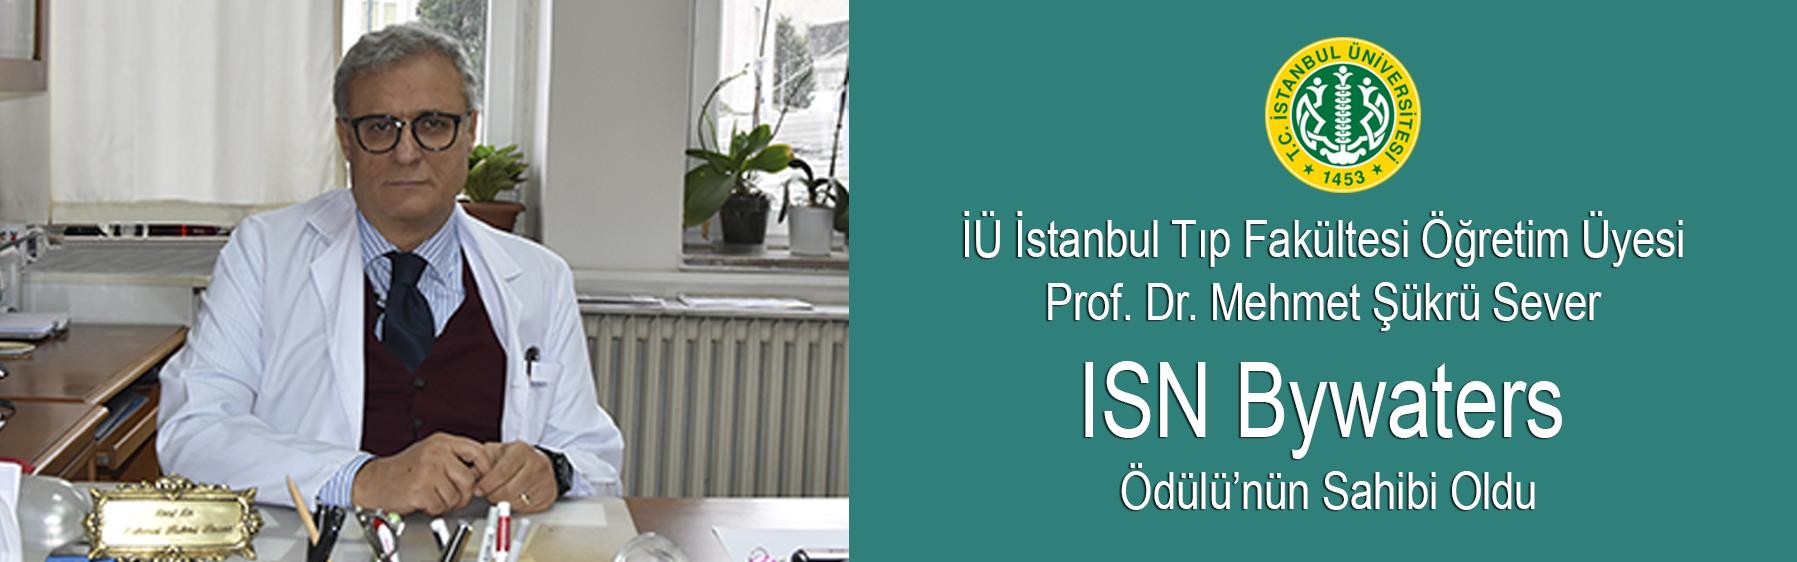 İÜ-İstanbul-Tıp-Fakültesi-Öğretim-Üyesi-Prof.-Dr.-Mehmet-Şükrü-Sever-ISN-Bywaters-Ödülü’nün-Sahibi-Oldu